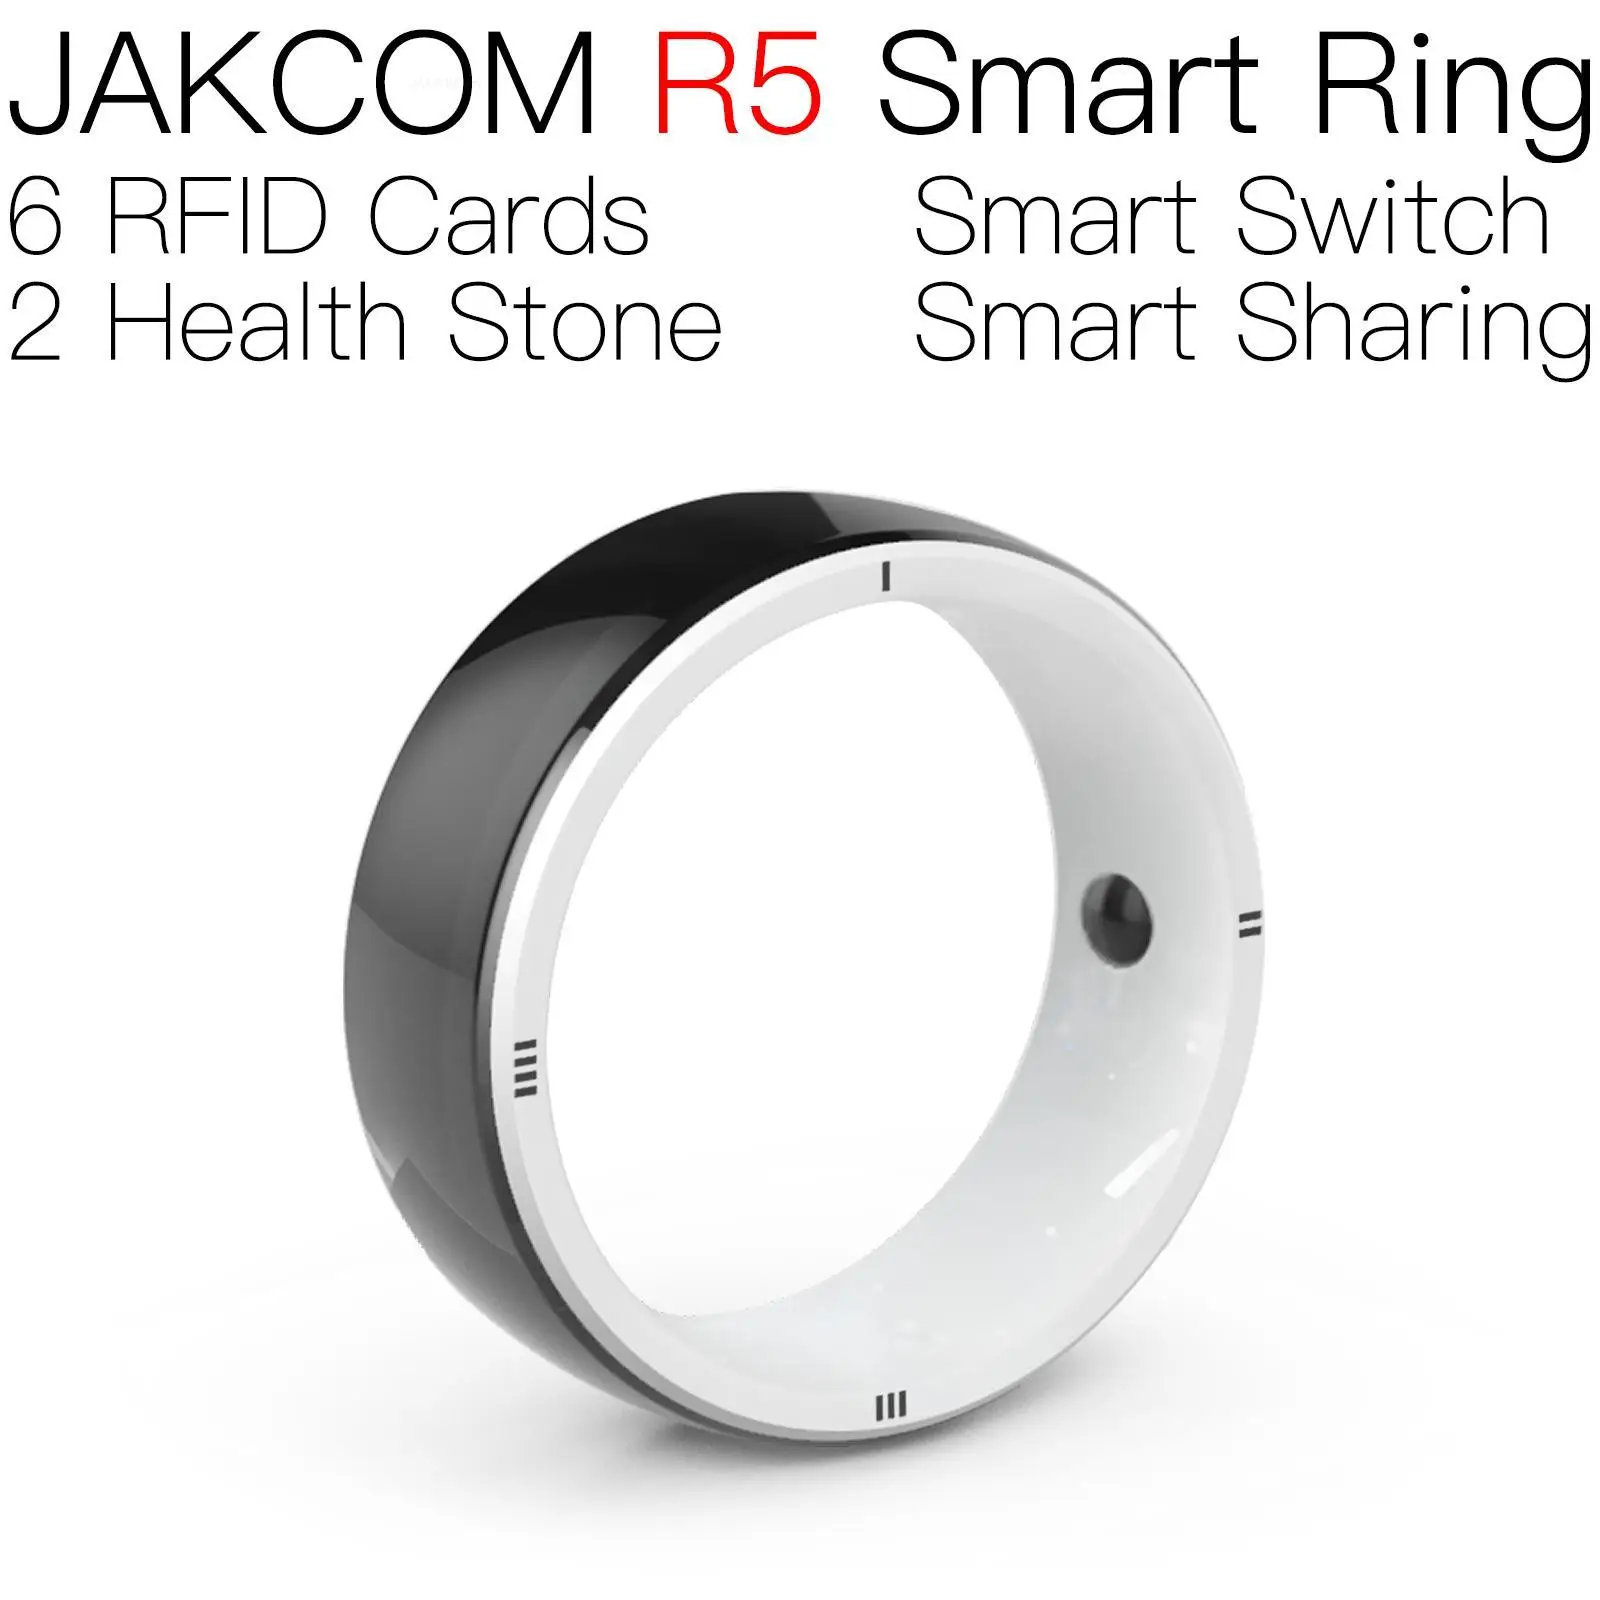 

Умное кольцо JAKCOM R5, лучше чем Премиум, 1 год, Польша, 15 мм, бирка, инструмент для взлома rf, мини-карты amibbo, ntag 213, водонепроницаемое